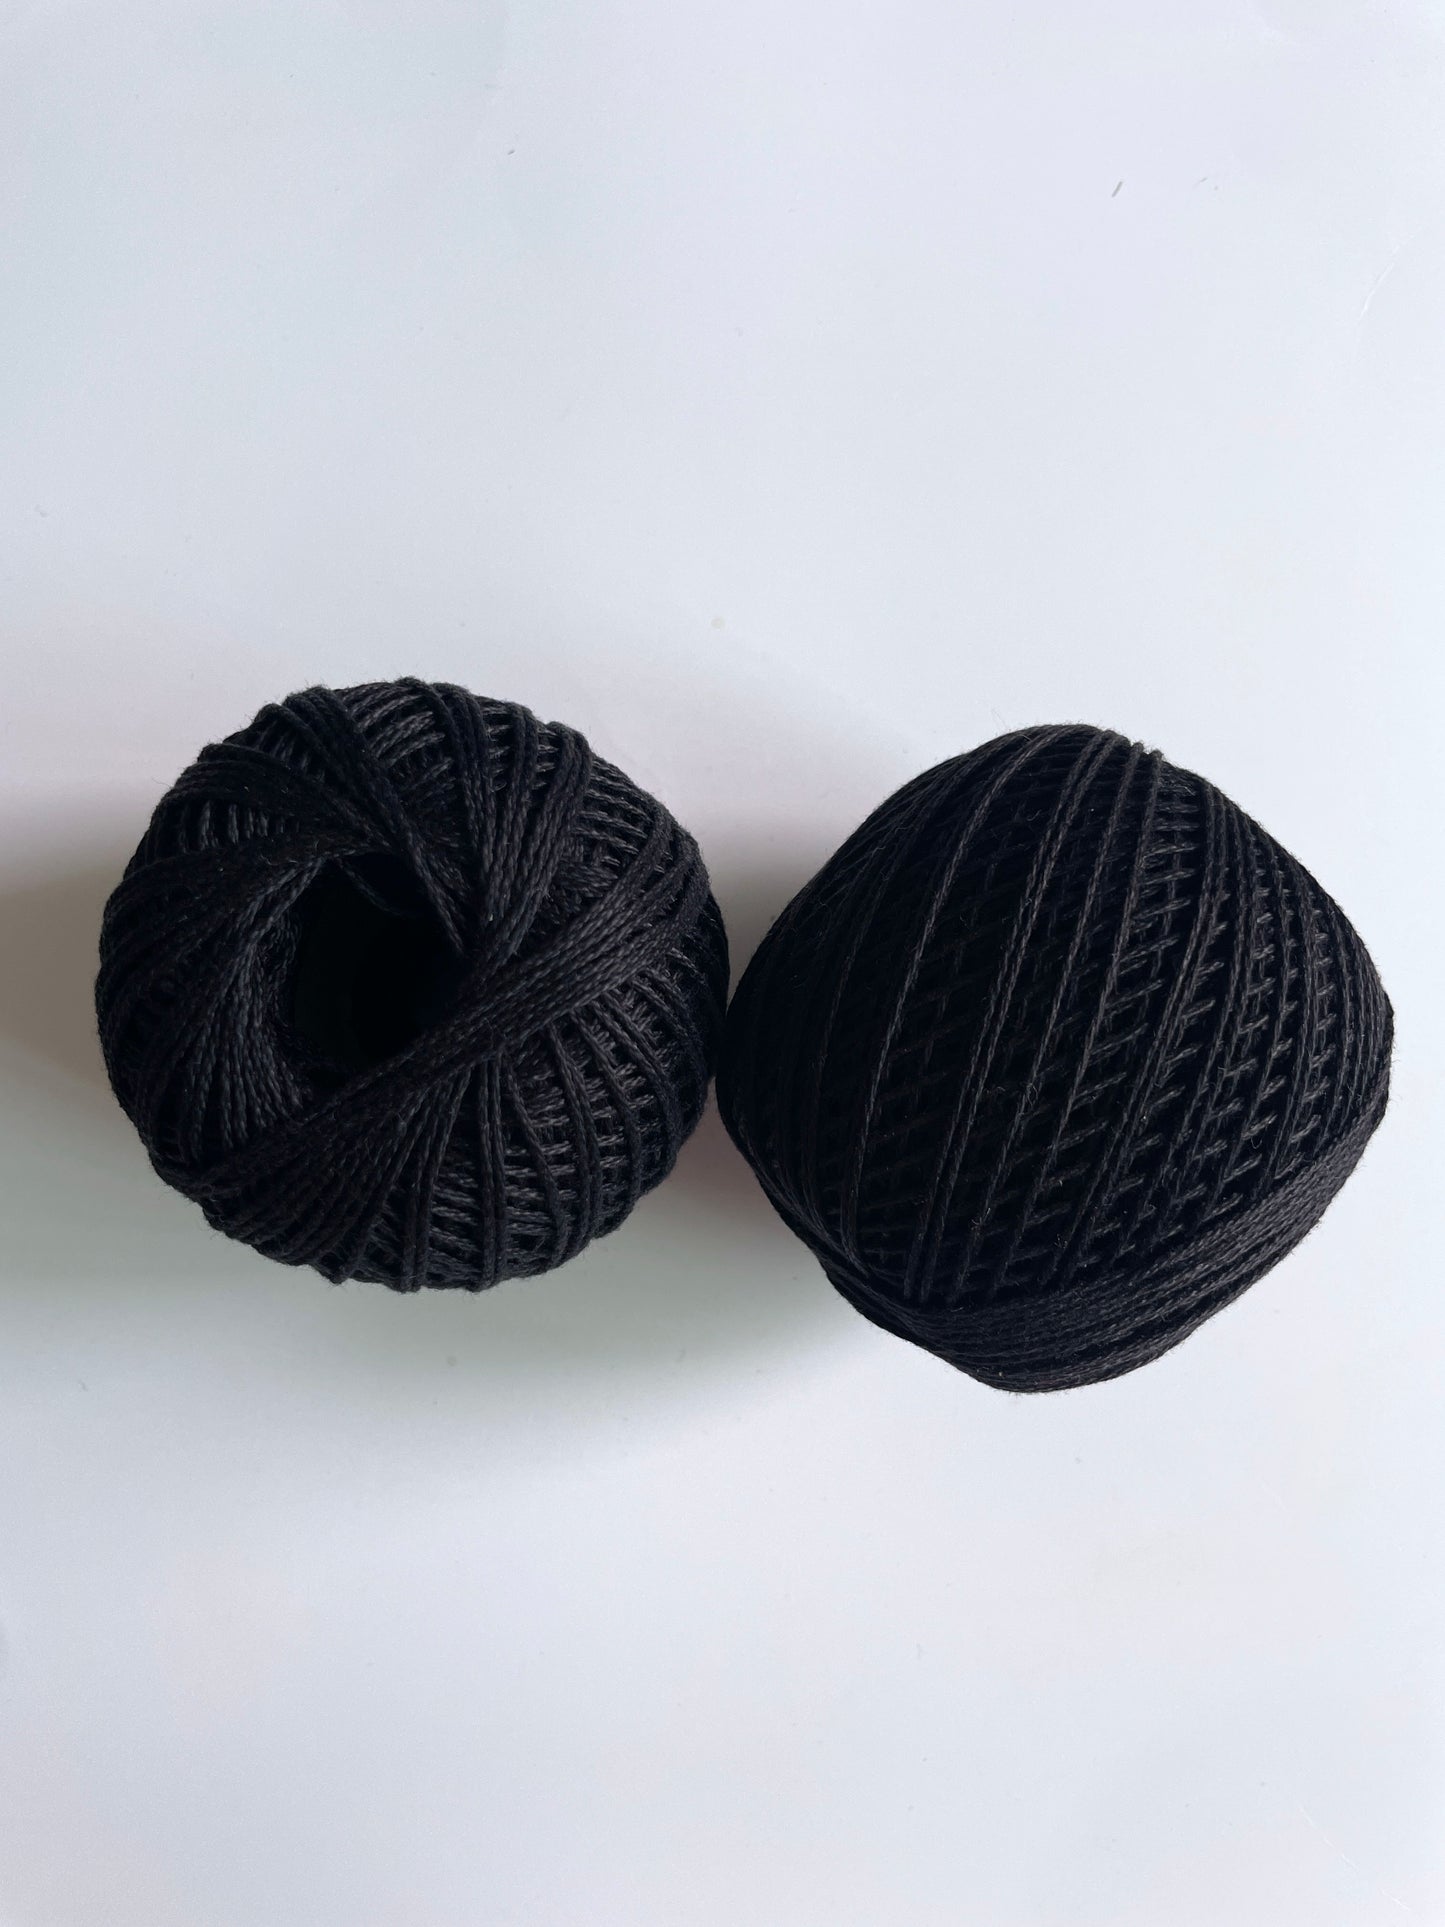 Knitting/Crochet Threads - Black